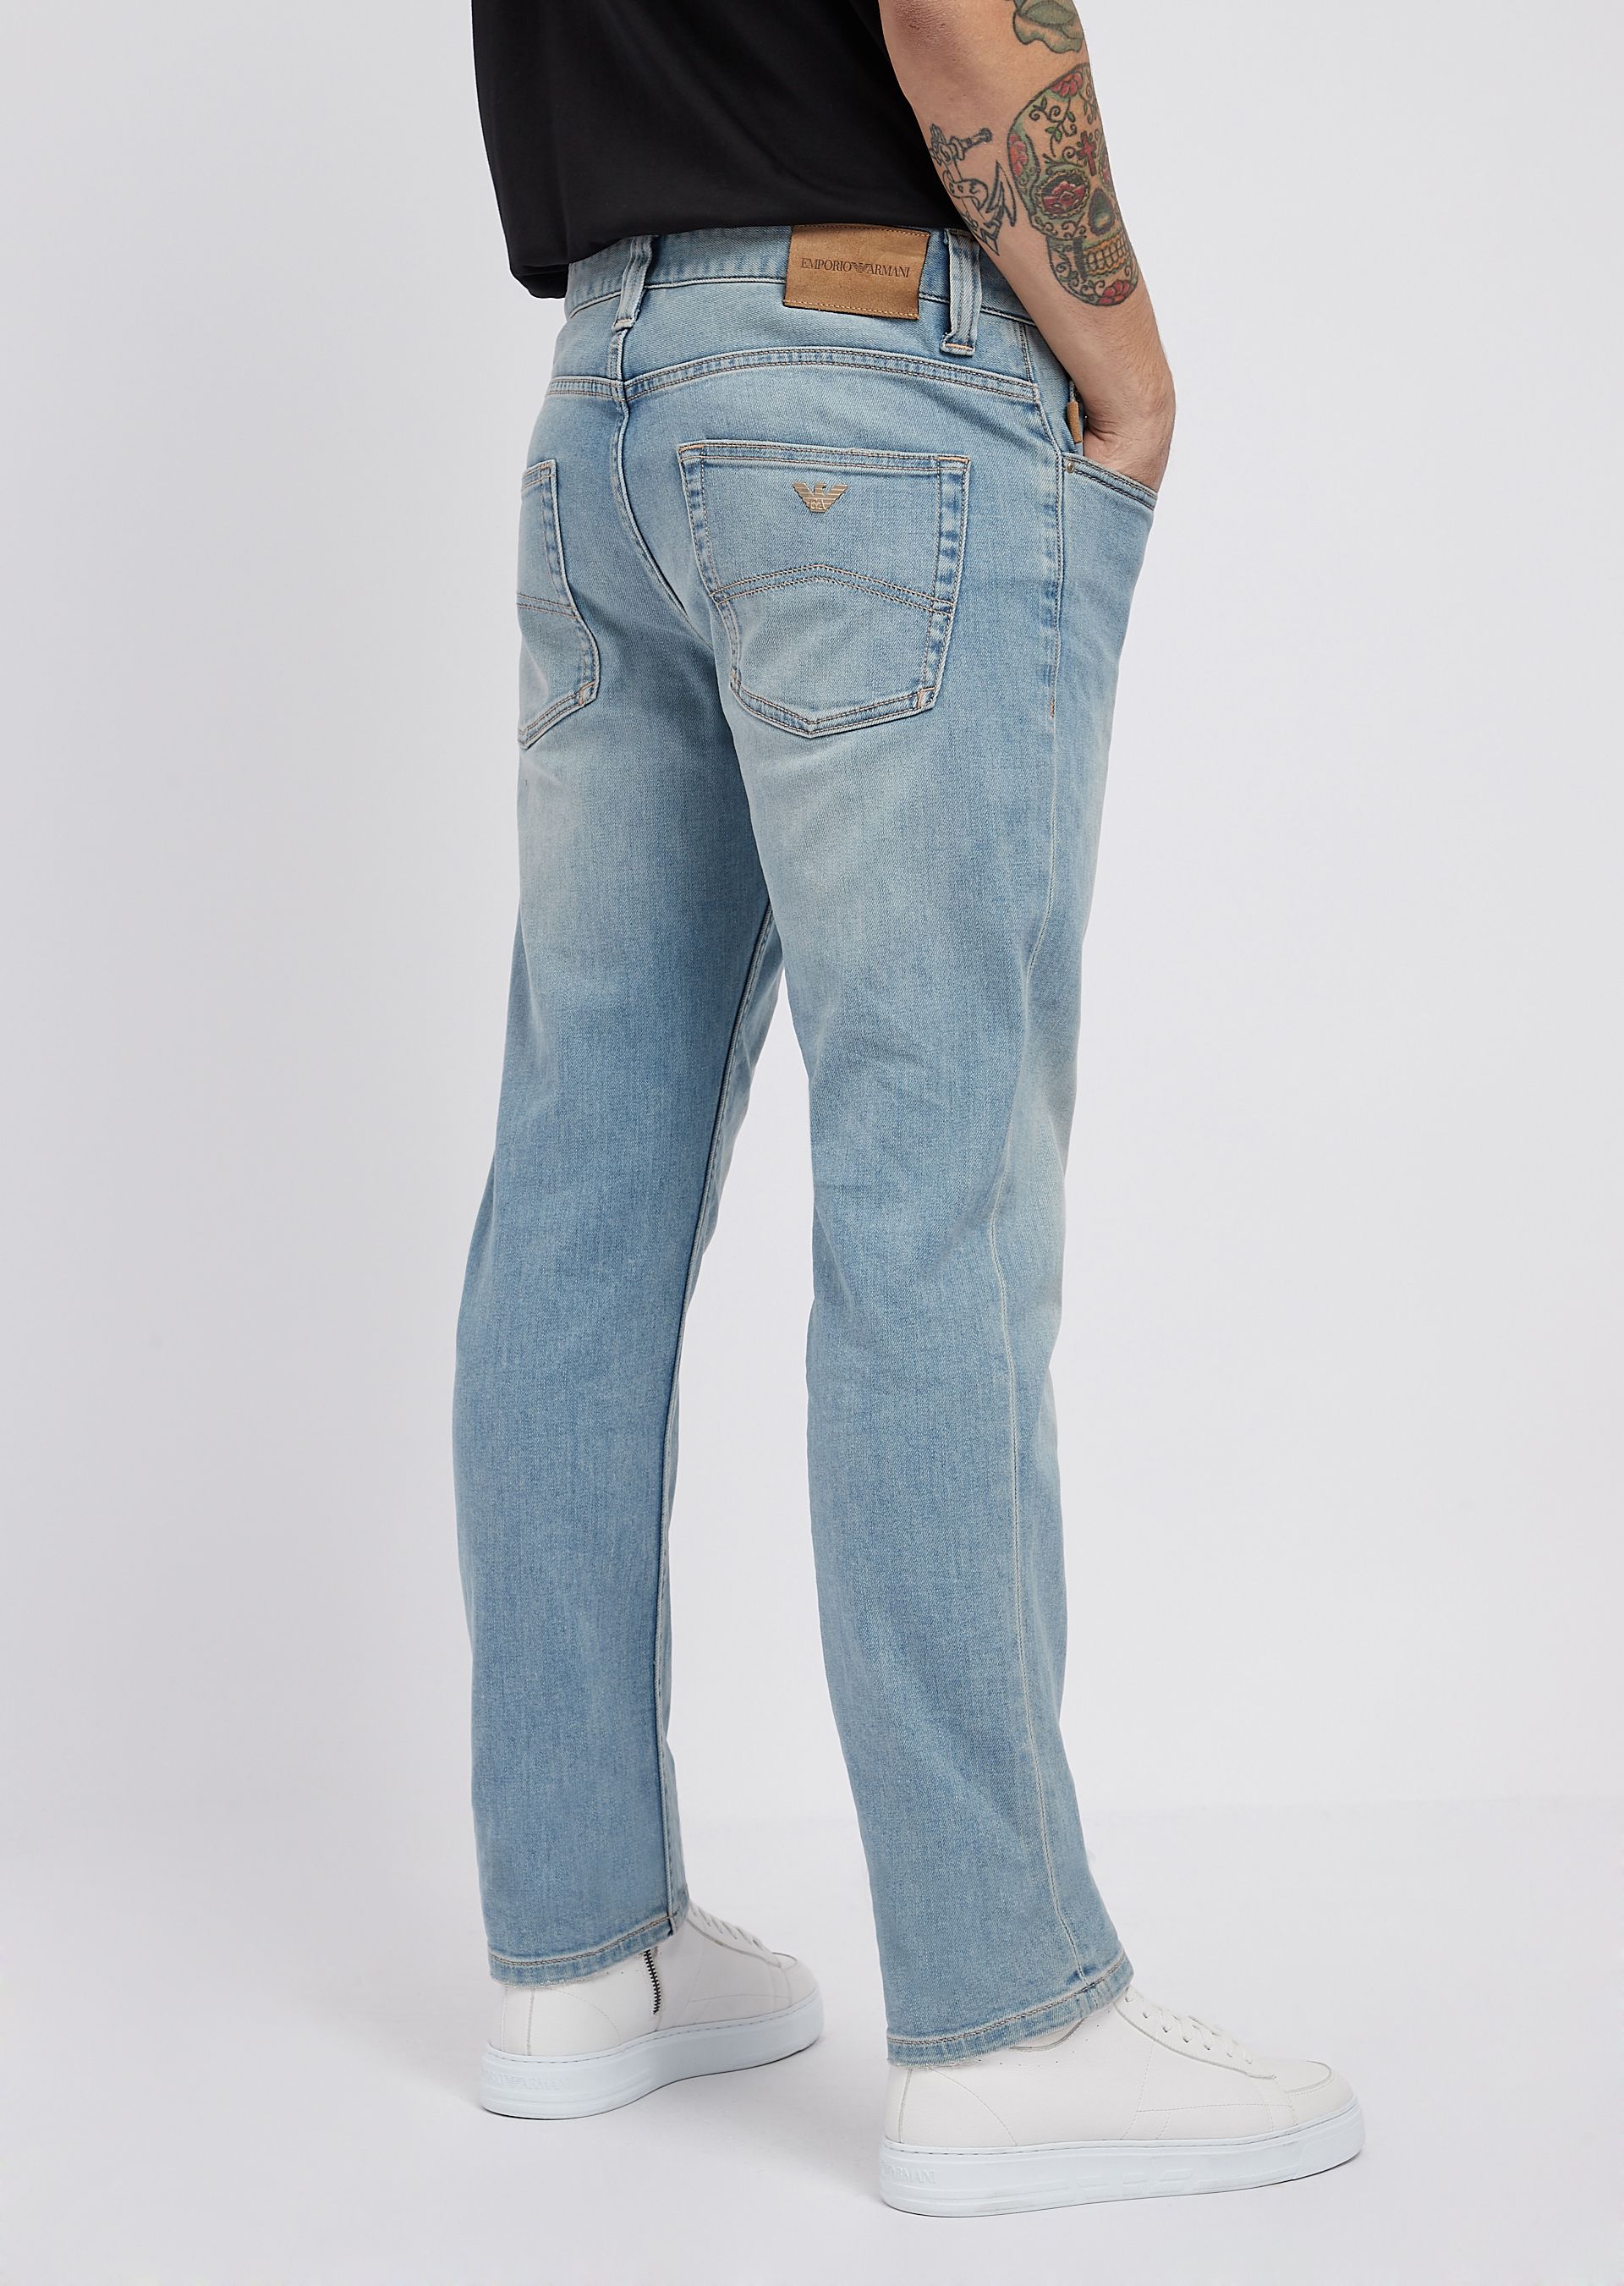 J15 jeans in 10.5 oz right-hand comfort denim twill | Man | Emporio Armani